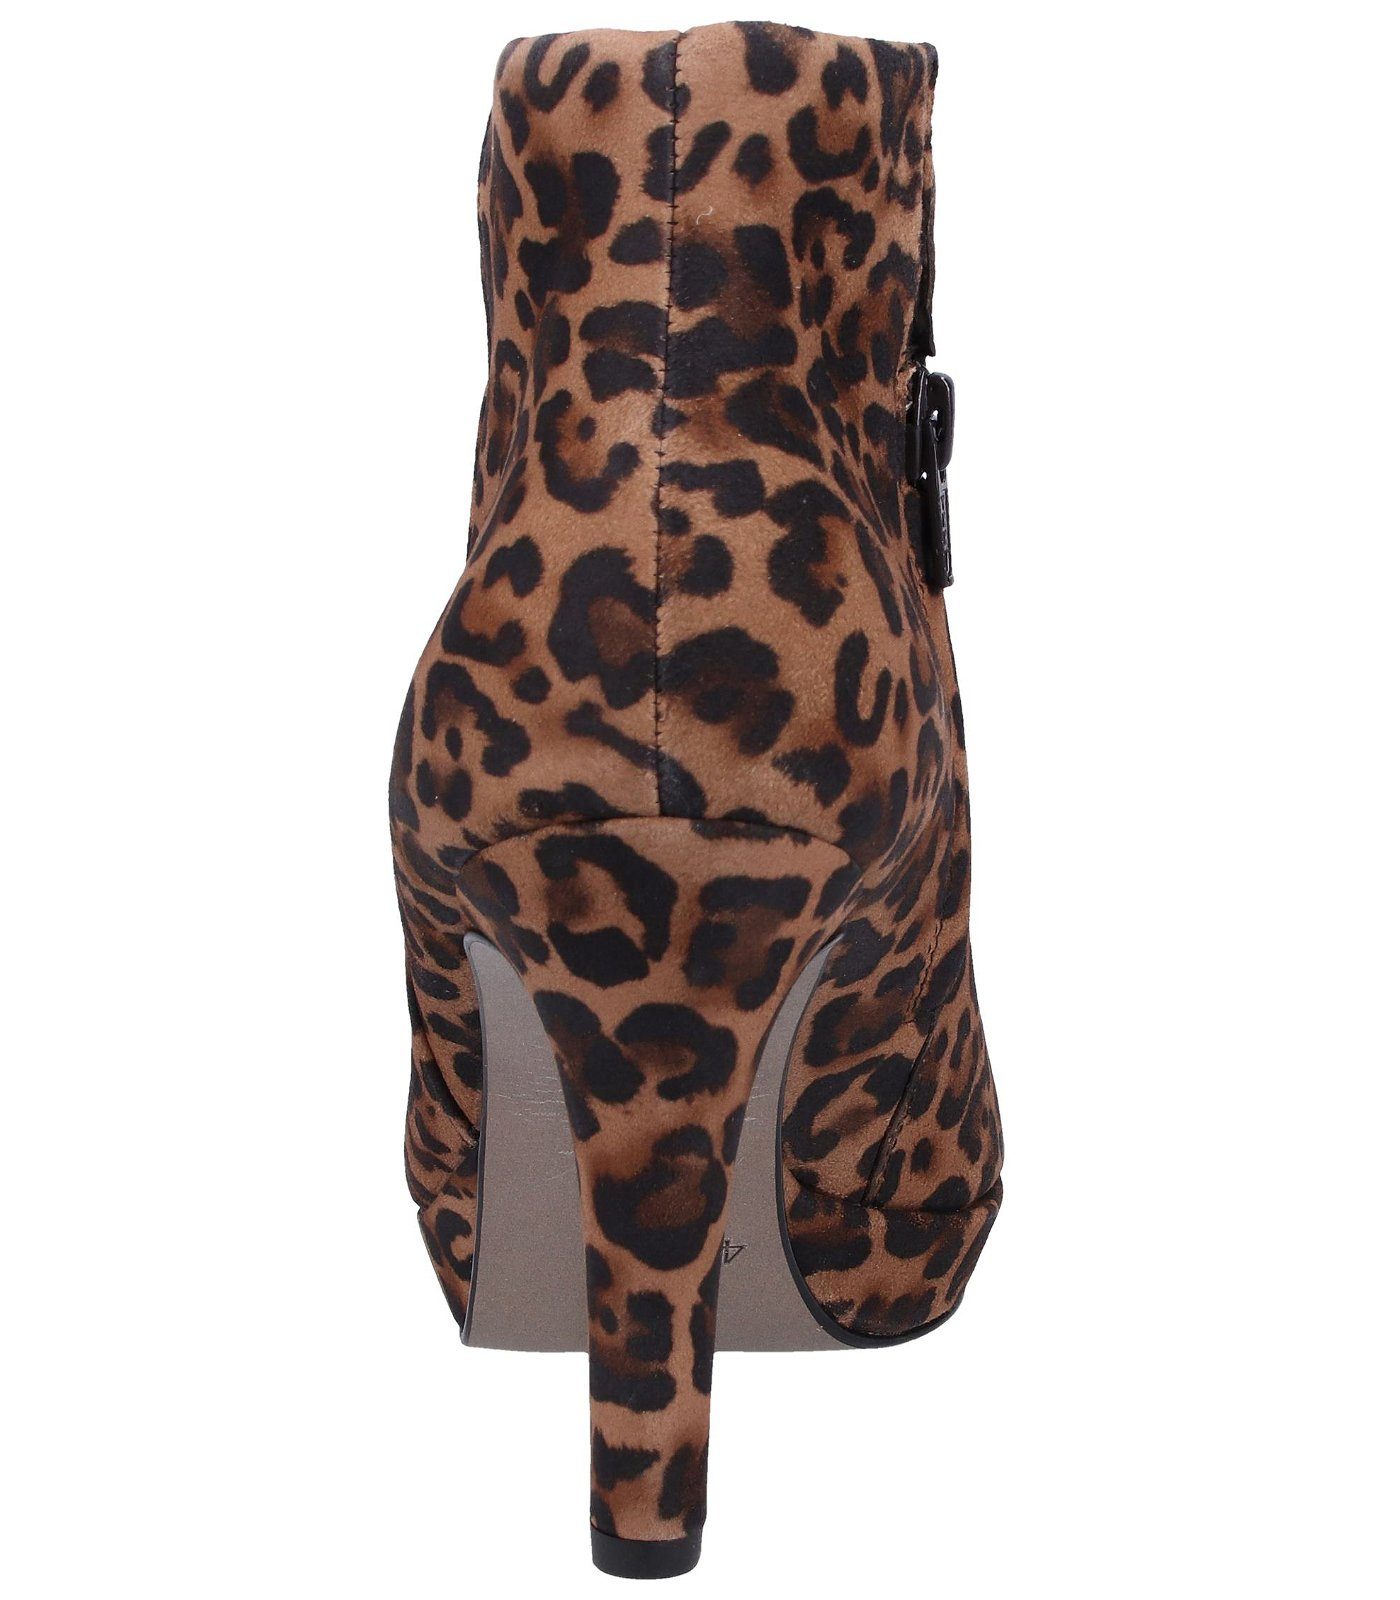 Paul Green Stiefelette Leder Leopard High-Heel-Stiefelette